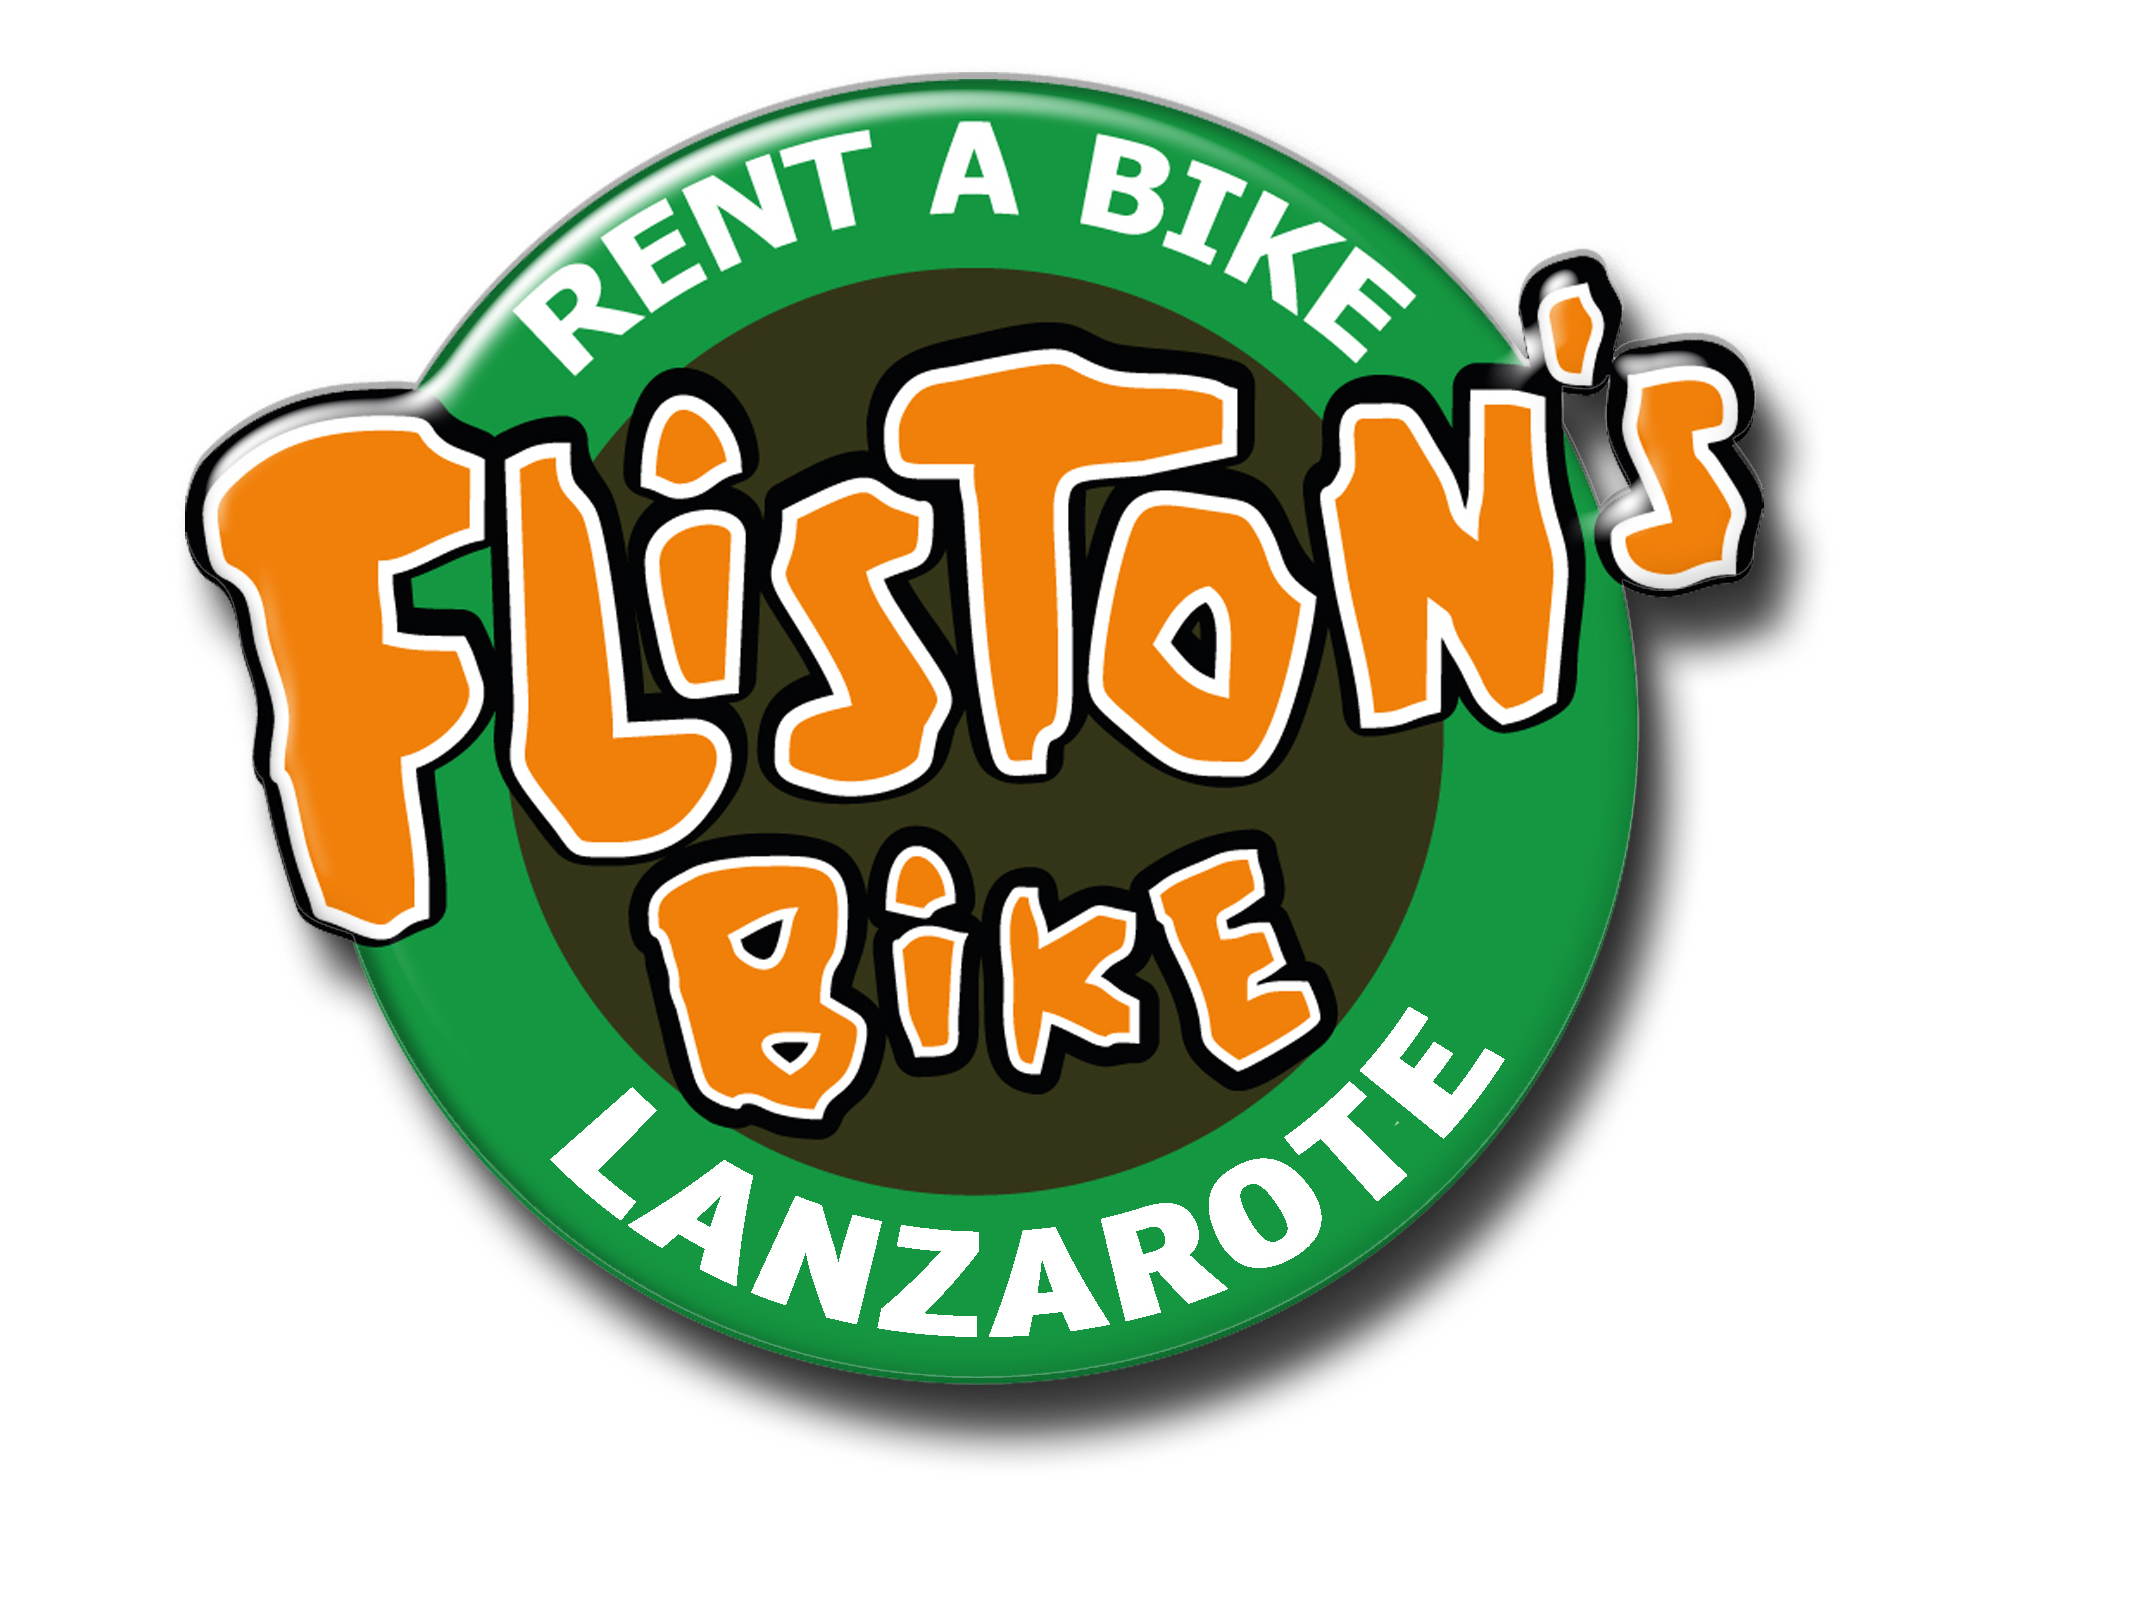 Fliston's Bike Lanzarote